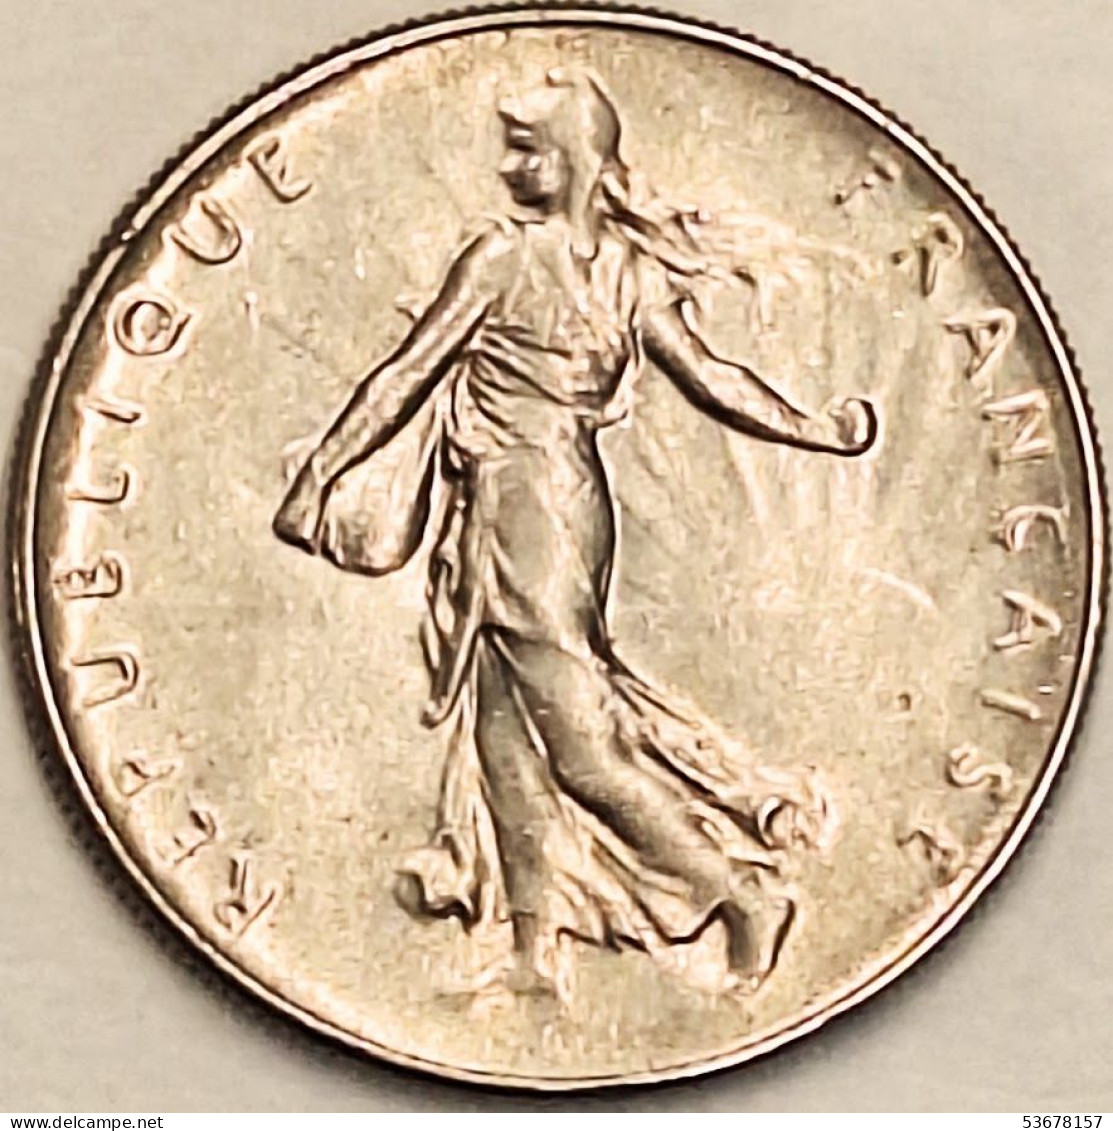 France - Franc 1964, KM# 925.1 (#4308) - 1 Franc